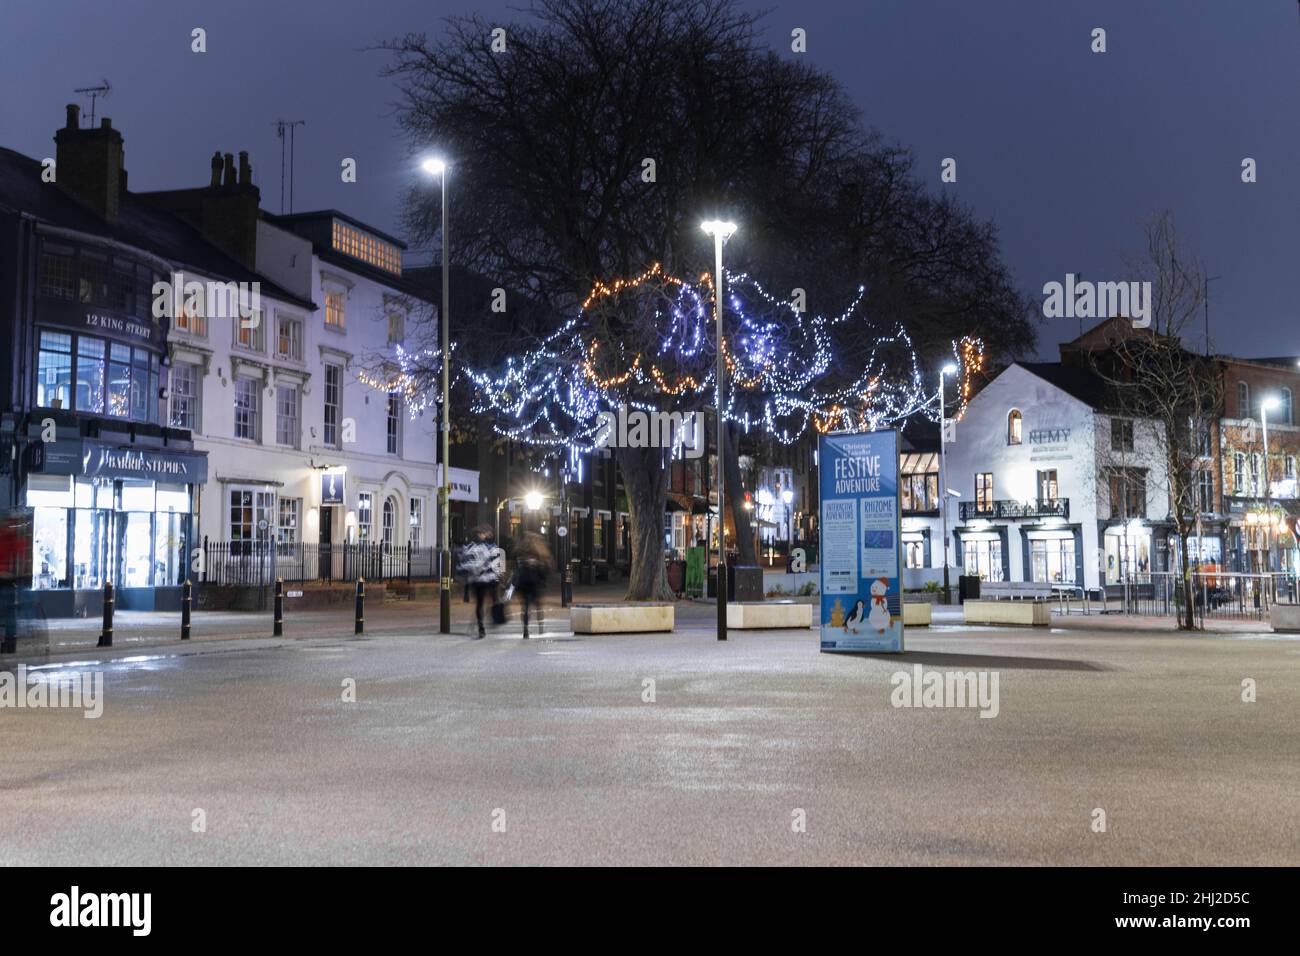 Nouvelle place de marche, montre une photo de nuit avec des lumières de Noël lumineuses, place ouverte avec des meubles de rue, des marches, et des bâtiments et des arbres en arrière-plan. Banque D'Images